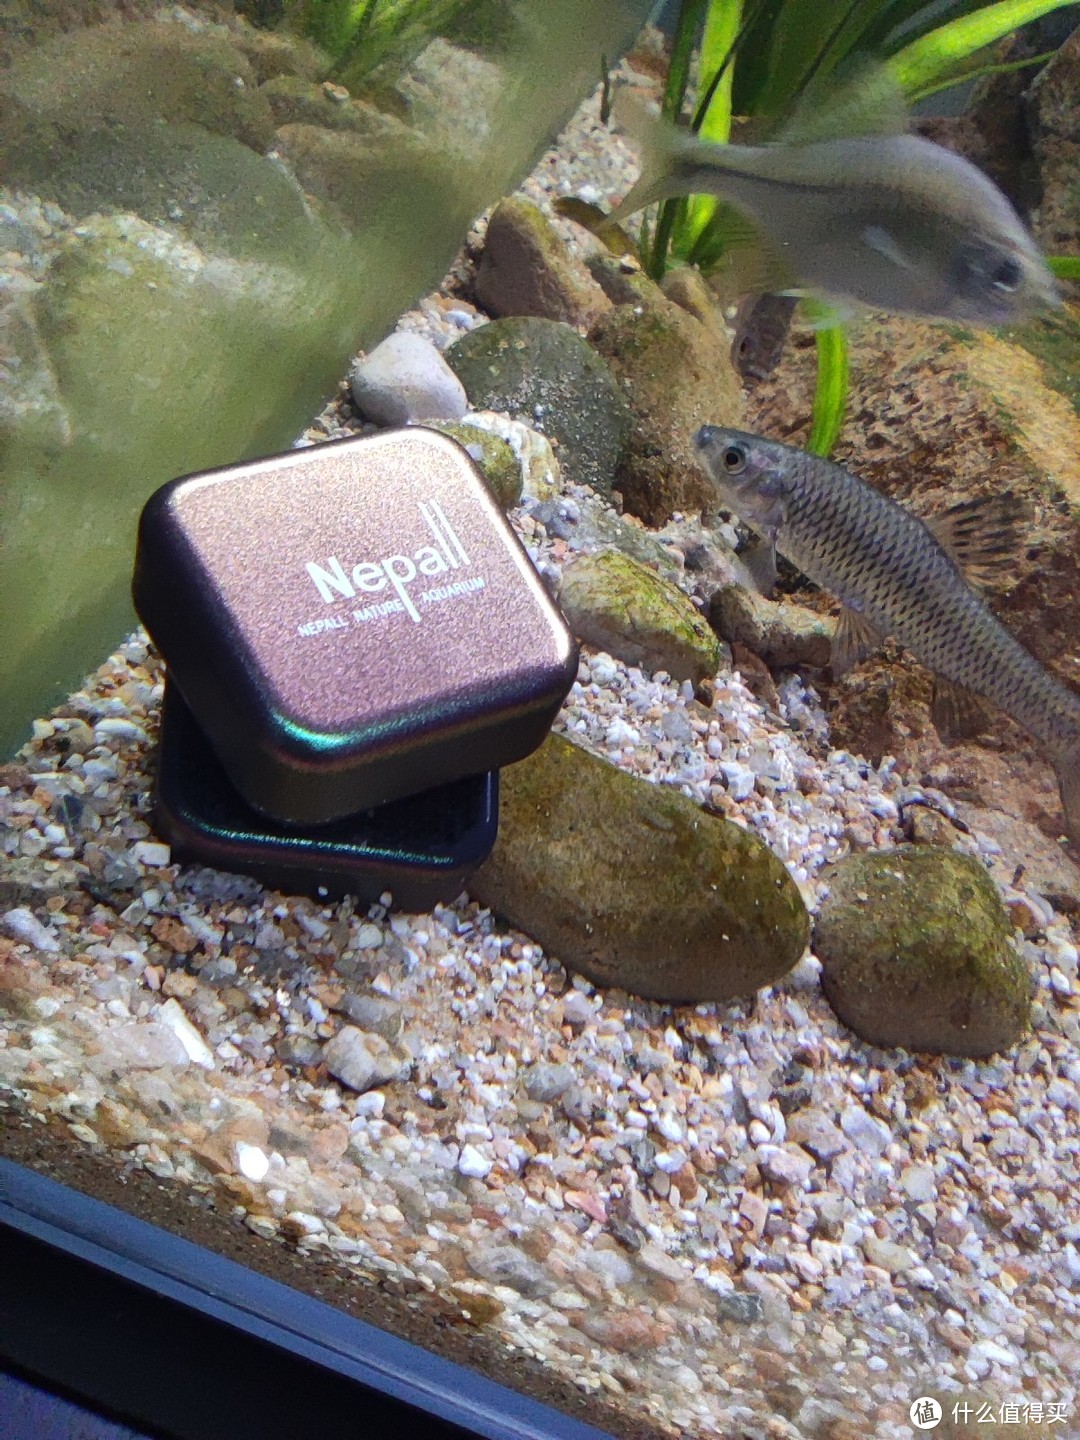 开箱一个小玩意——鱼缸磁力刷，精致小巧，再顺便介绍一下我家的小动物